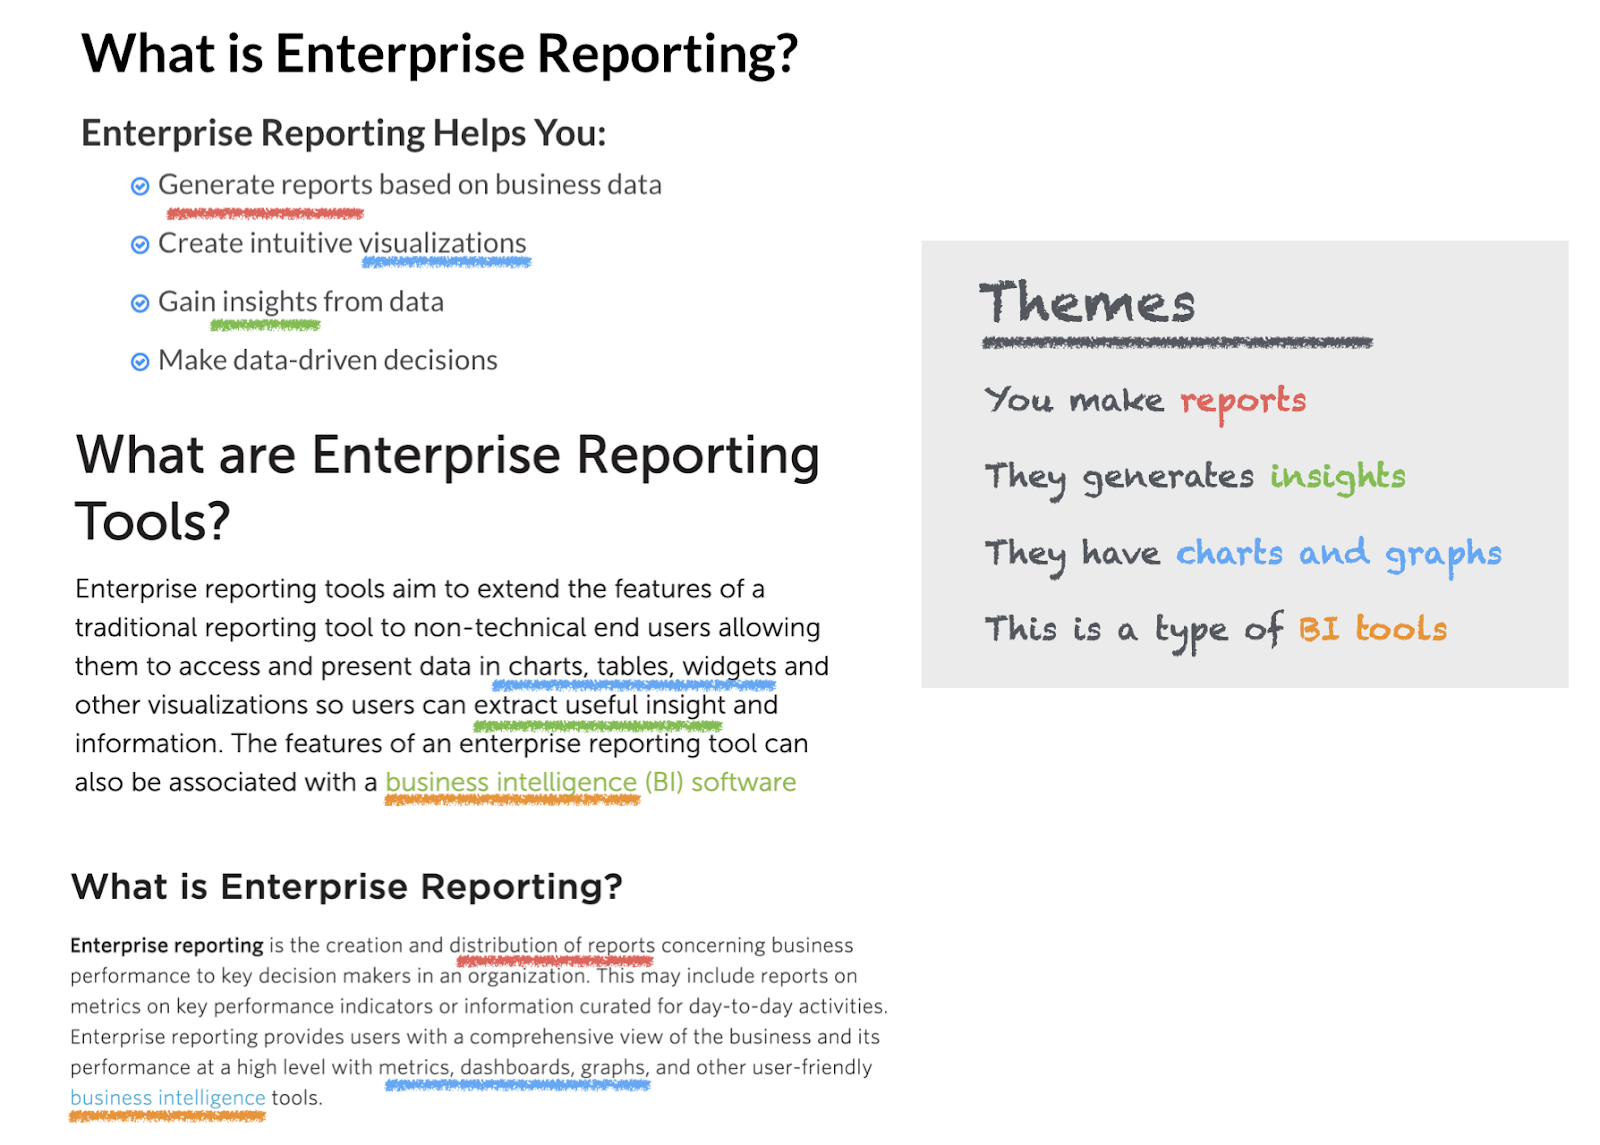 enterprise reporting image